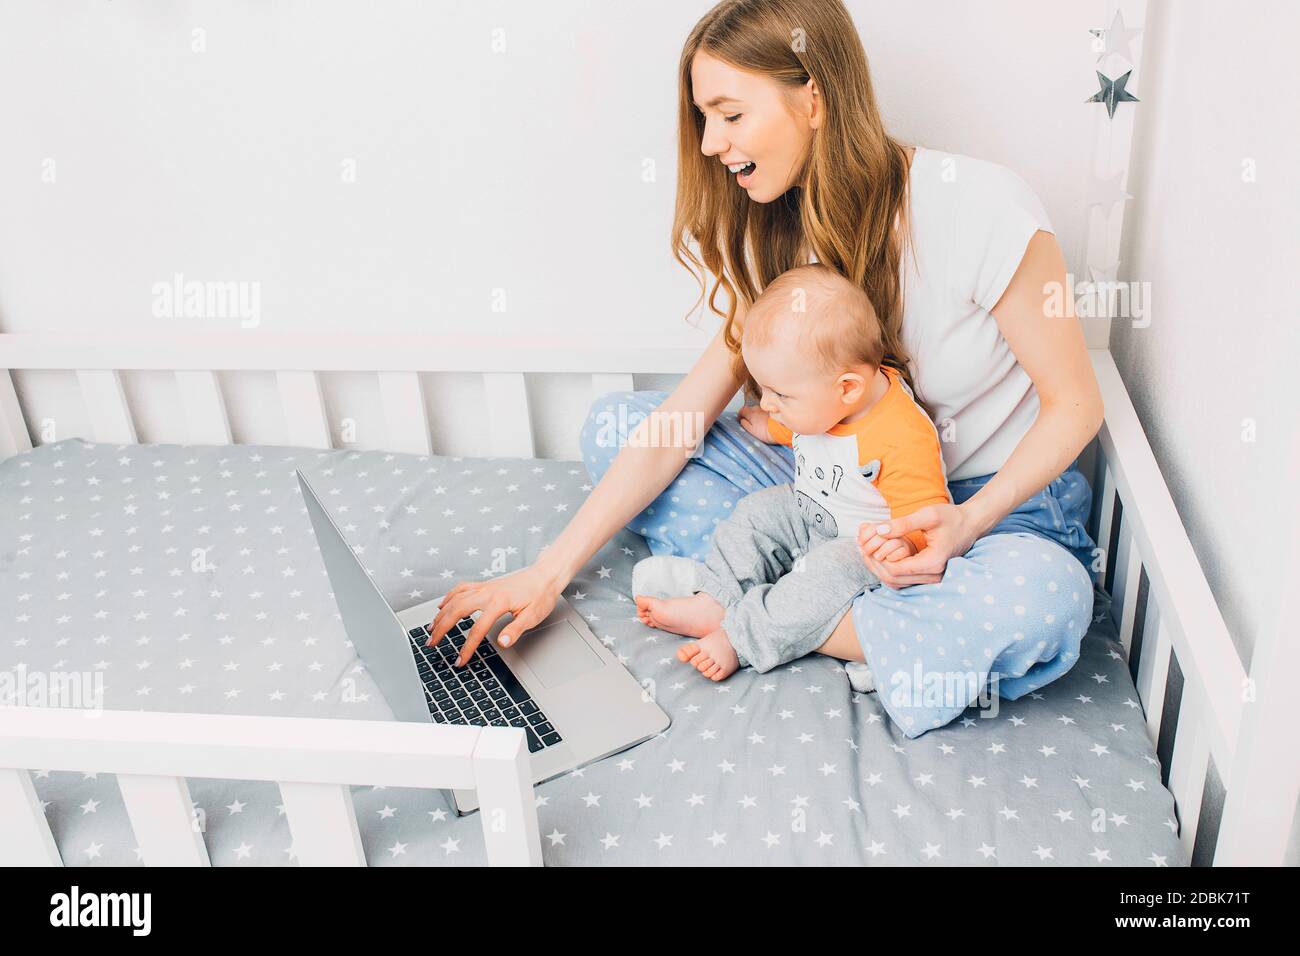 Eine junge Mutter im Schlafanzug mit einem kleinen Kind, sitzt auf dem  Bett, mit einem tragbaren Laptop. Das Konzept der Remote-Arbeit in  Quarantäne Stockfotografie - Alamy